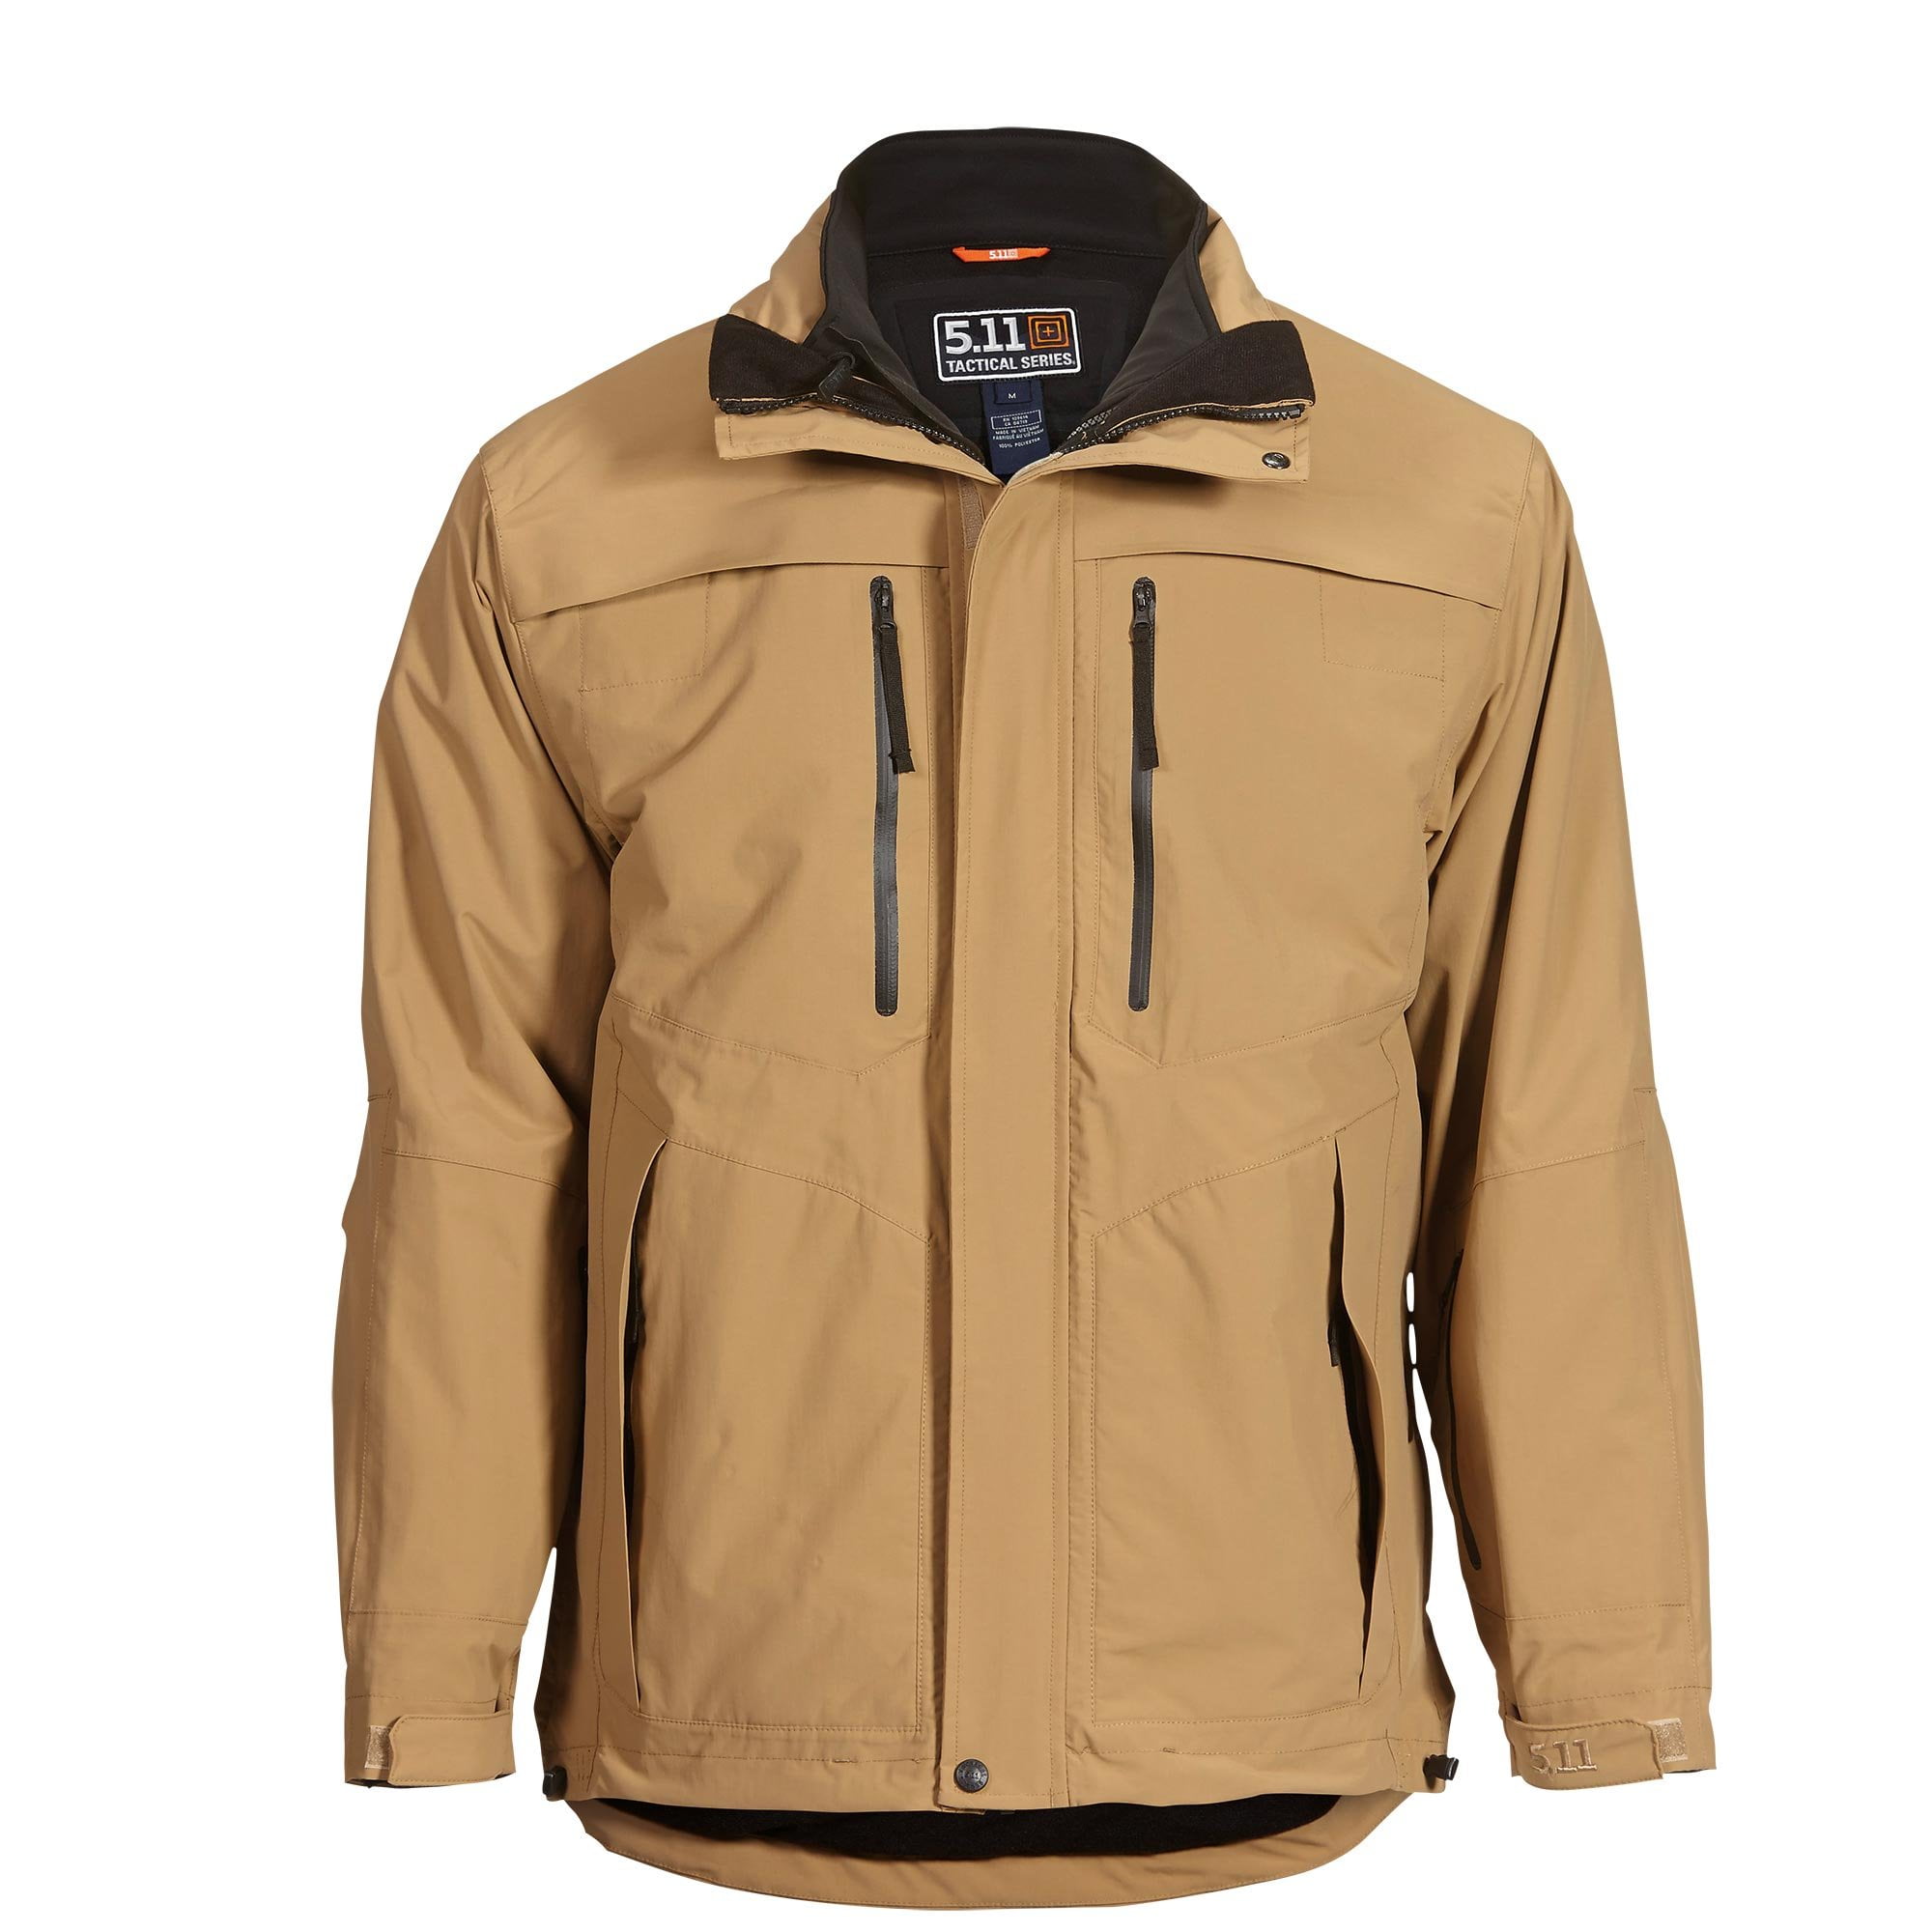 Wind-Resistant YKK Zippers Hardware Style 48038 5.11 Tactical Men's Fleece Jacket 